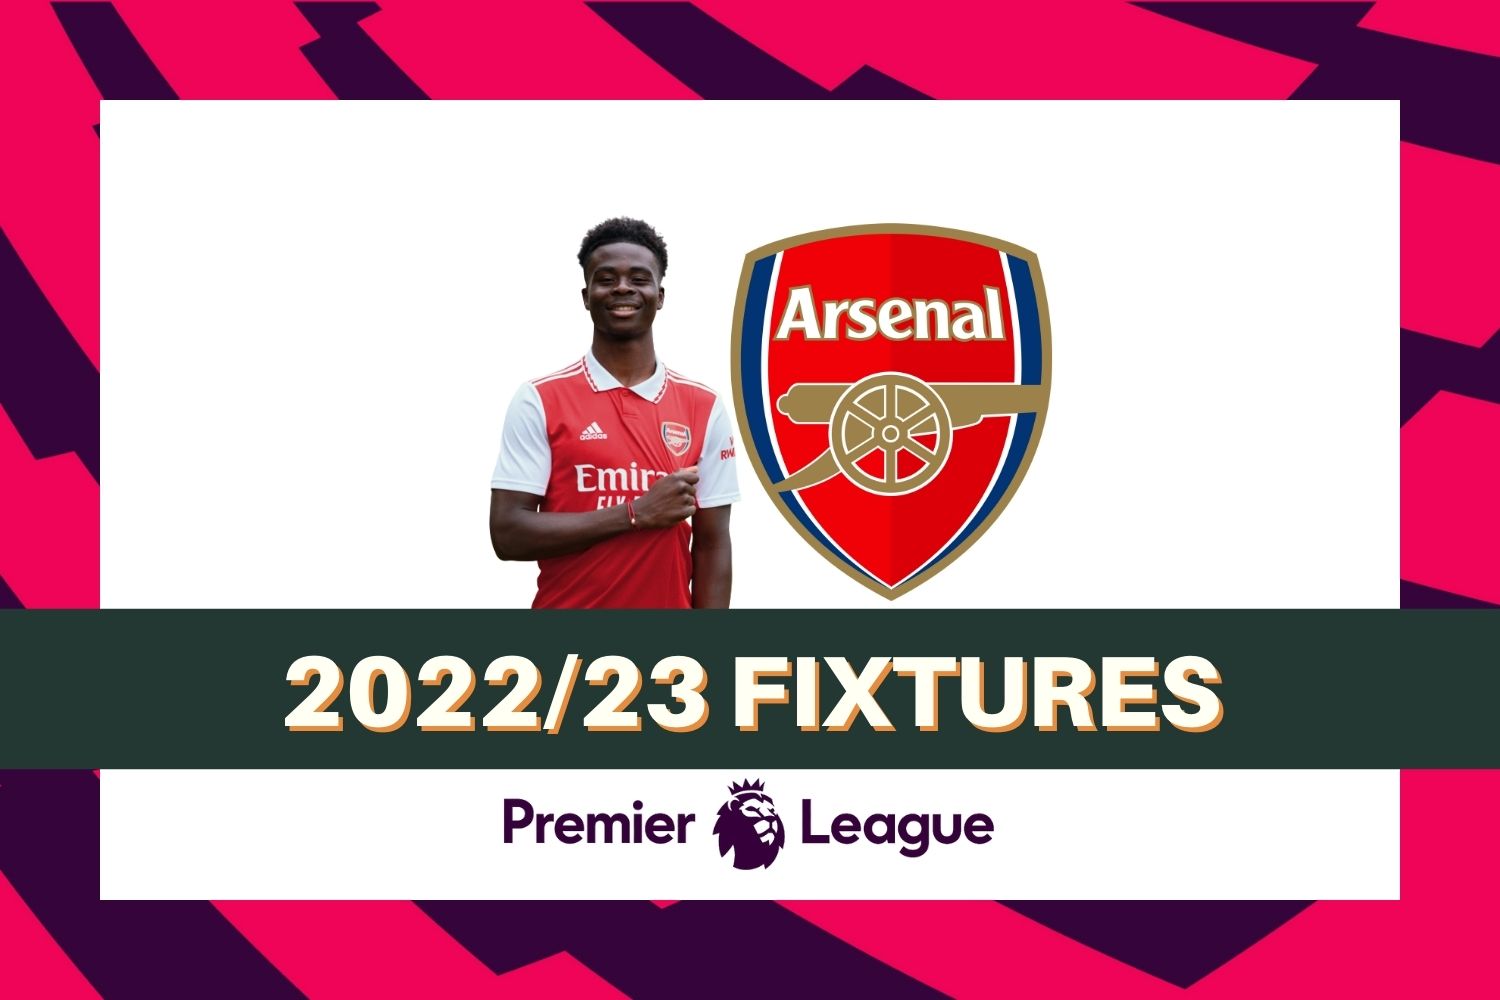 Arsenal’s 2022/23 Premier League fixtures & schedule